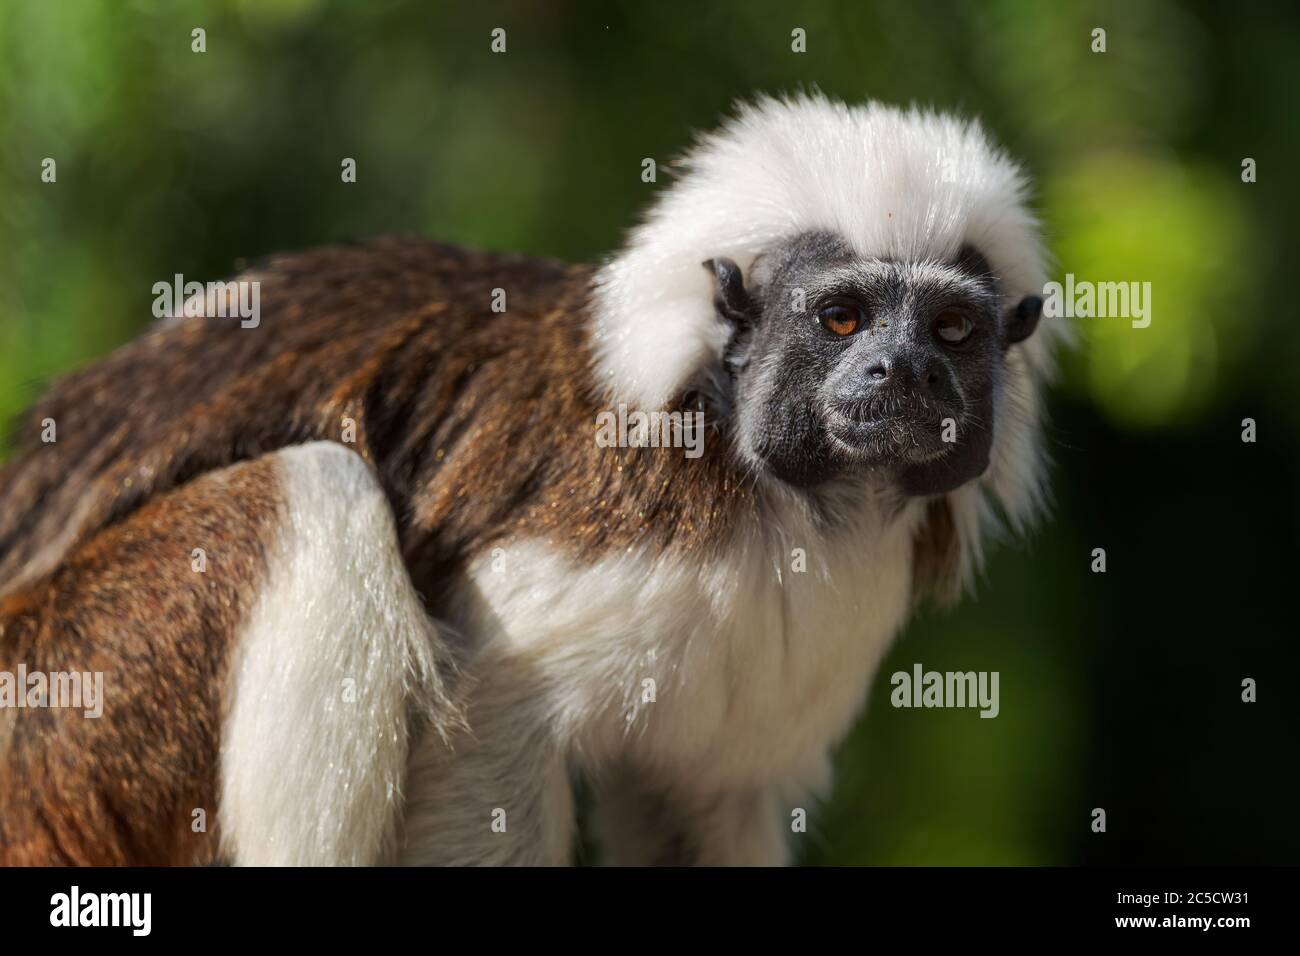 Tamarin de coton - Saguinus oedipus, beau petit primate des forêts tropicales sud-américaines, Colombie. Banque D'Images